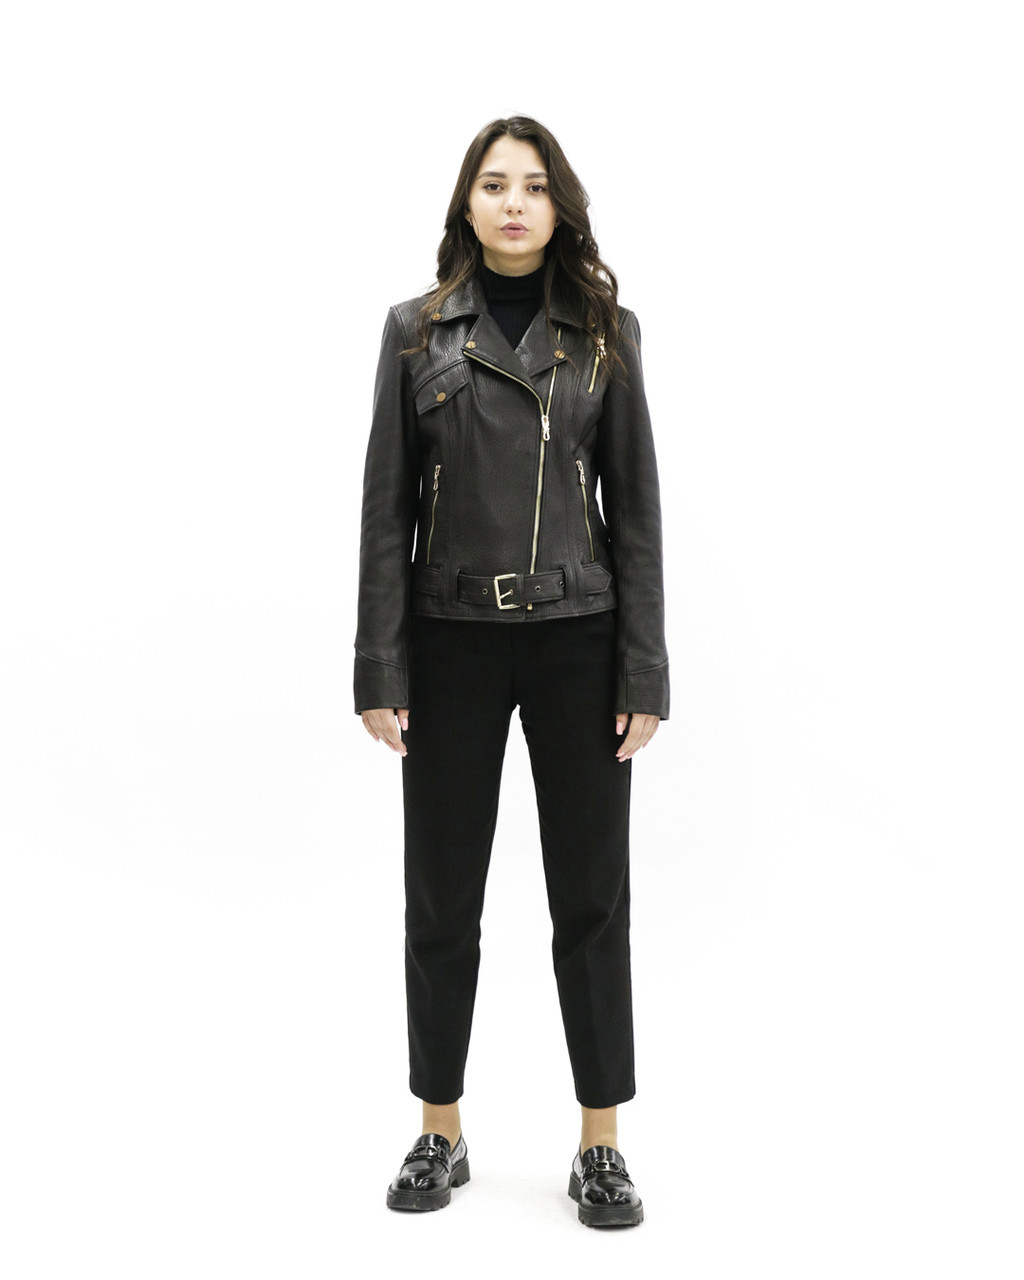 Женская куртка черная «UM&H 21486830» (натуральная кожа, питон), фото 1